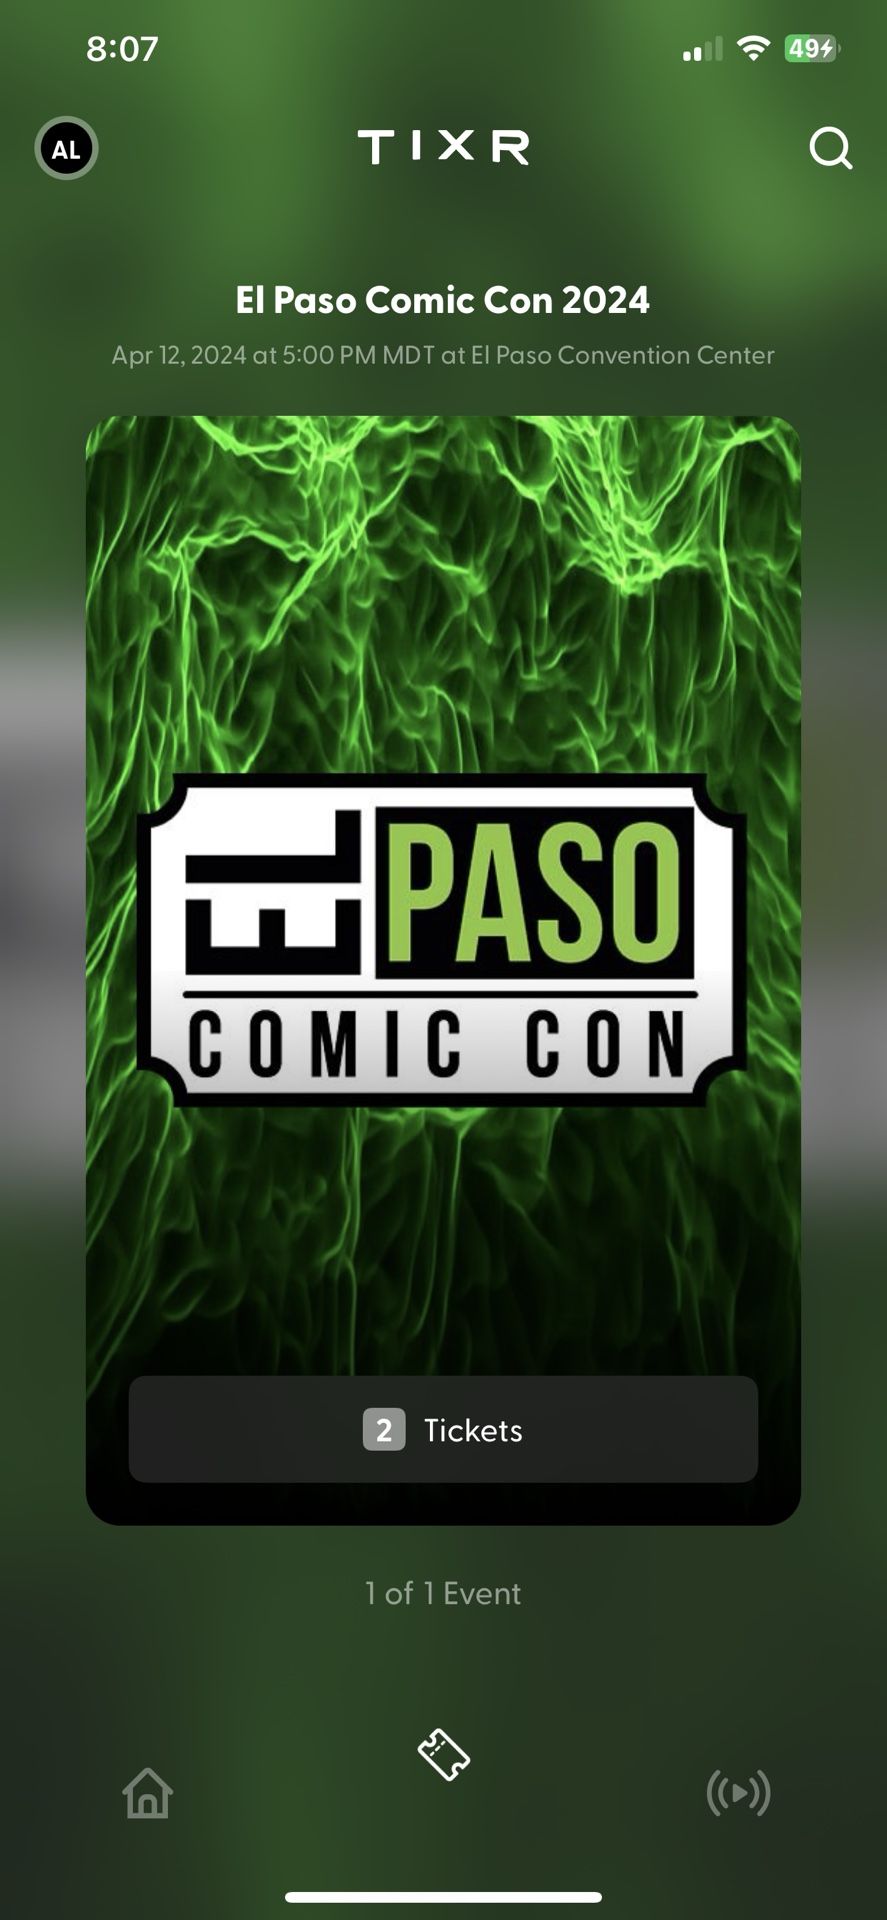 El Paso Comic Con 2024 2 Tickets 